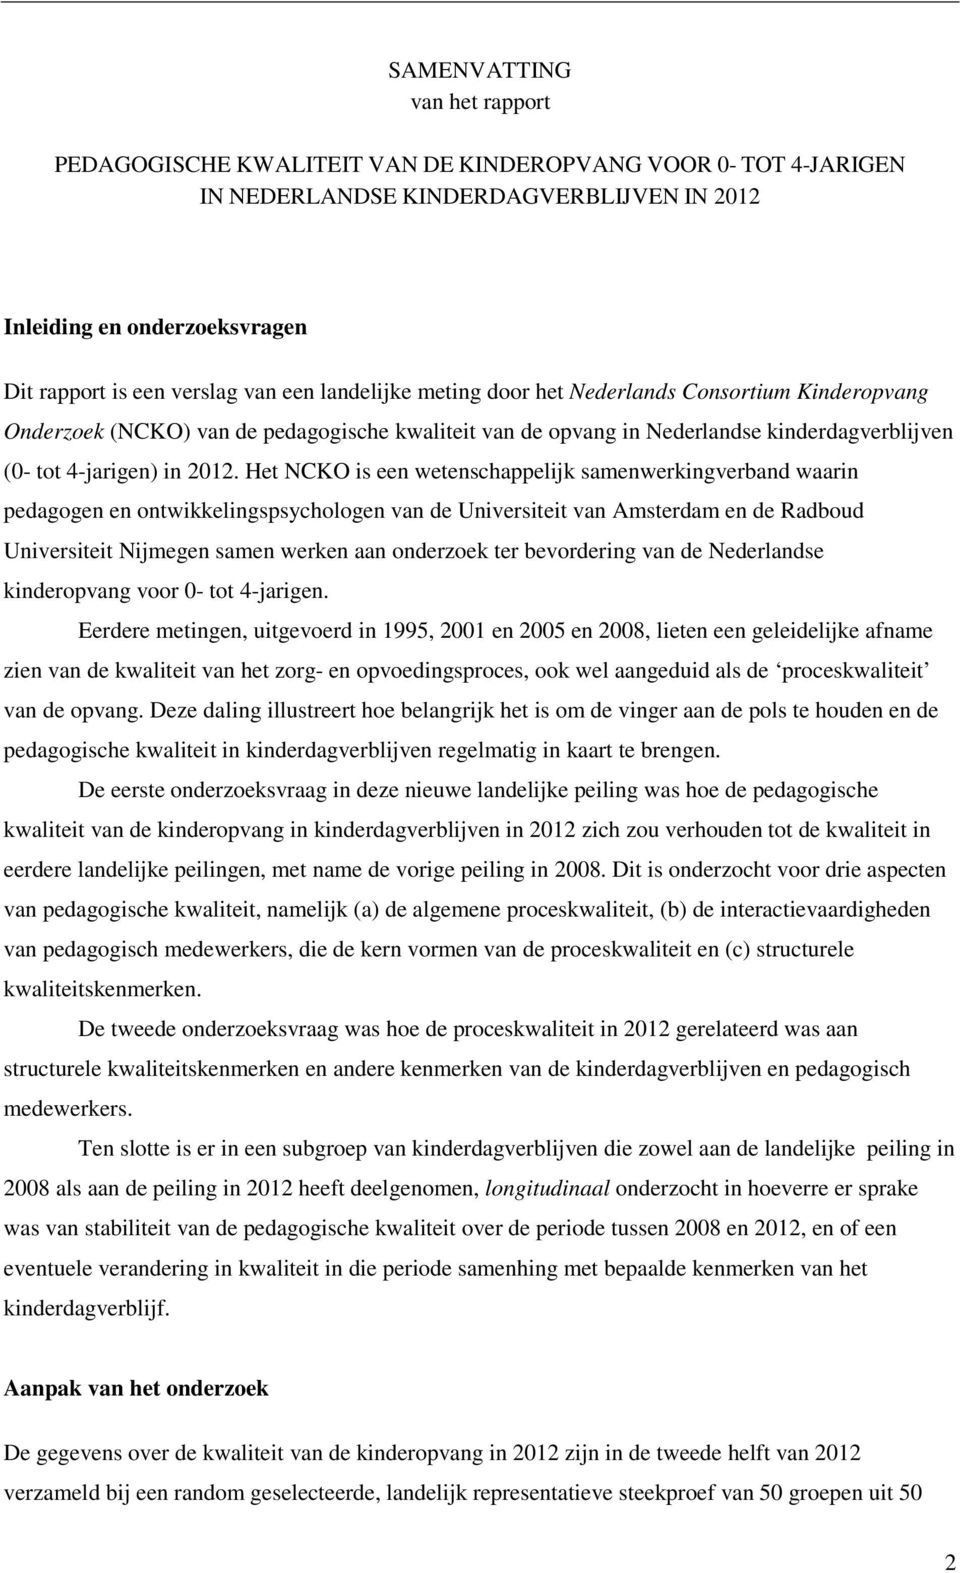 Het NCKO is een wetenschappelijk samenwerkingverband waarin pedagogen en ontwikkelingspsychologen van de Universiteit van Amsterdam en de Radboud Universiteit Nijmegen samen werken aan onderzoek ter